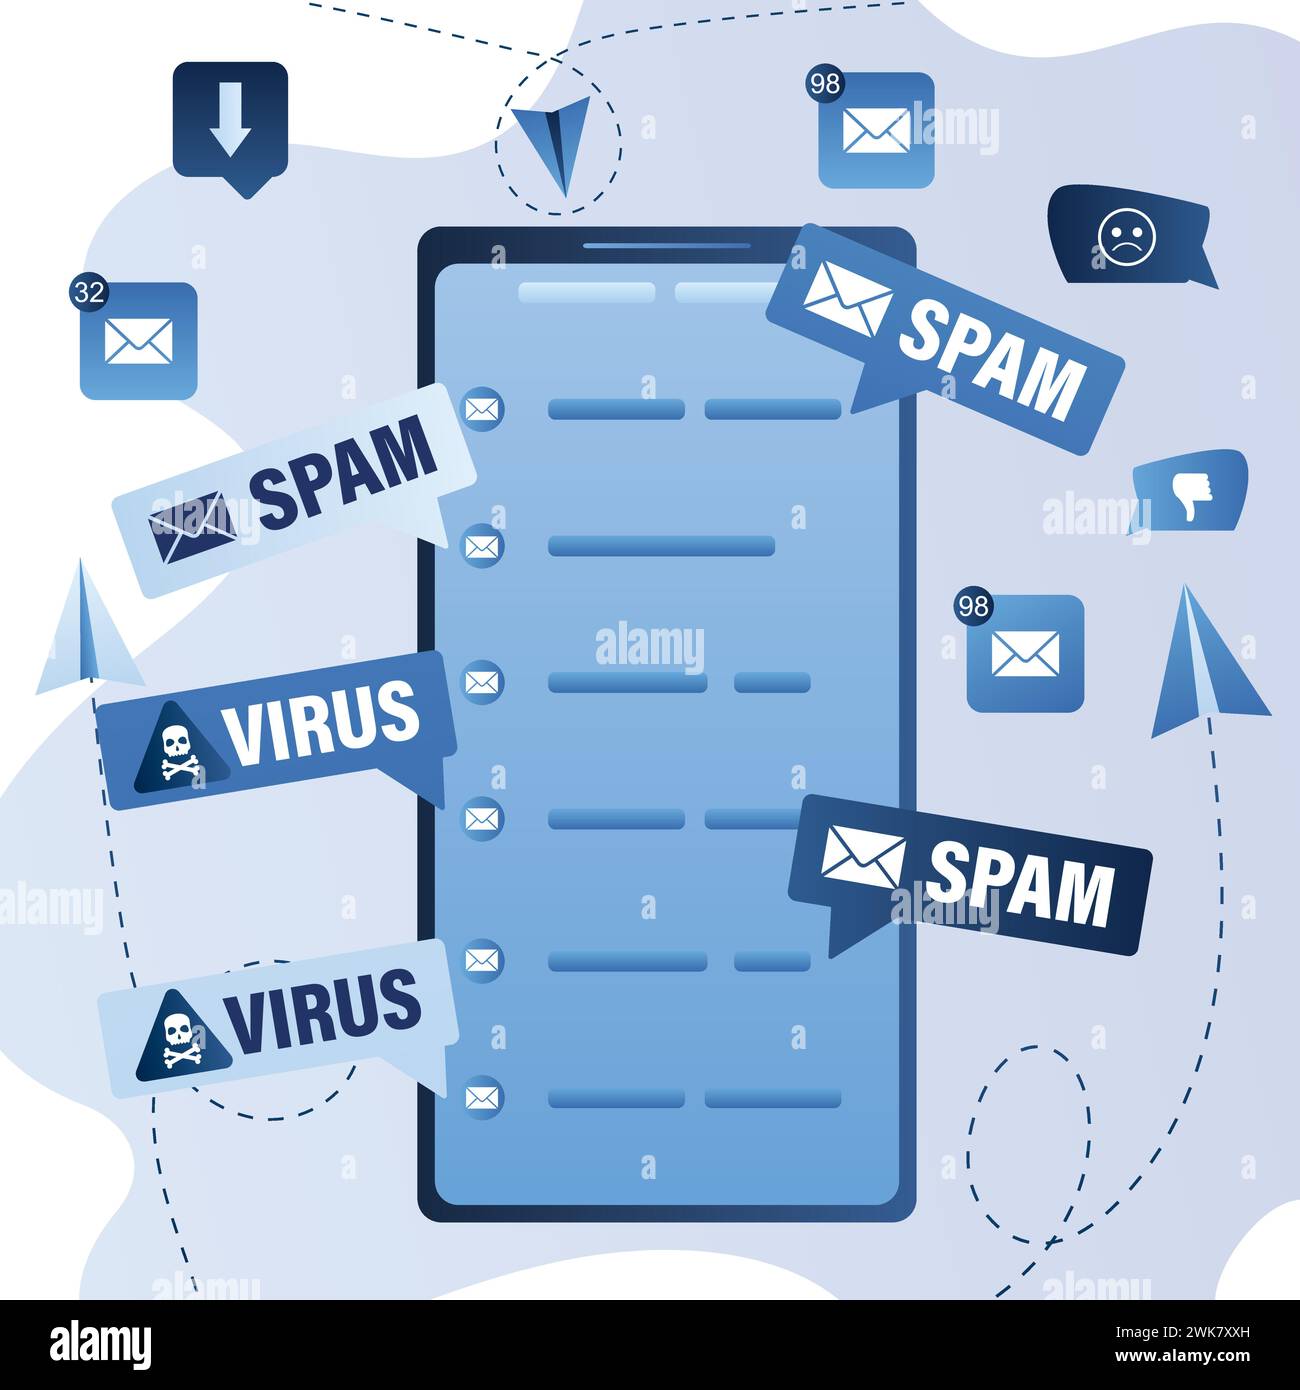 Modernes Mobiltelefon mit E-Mail-Anwendung. Mailing-Werbung, Phishing, Verbreitung von Malware irrelevante unerwünschte Spam-Nachrichten. Spam, unerbetene Nachrichten Stock Vektor